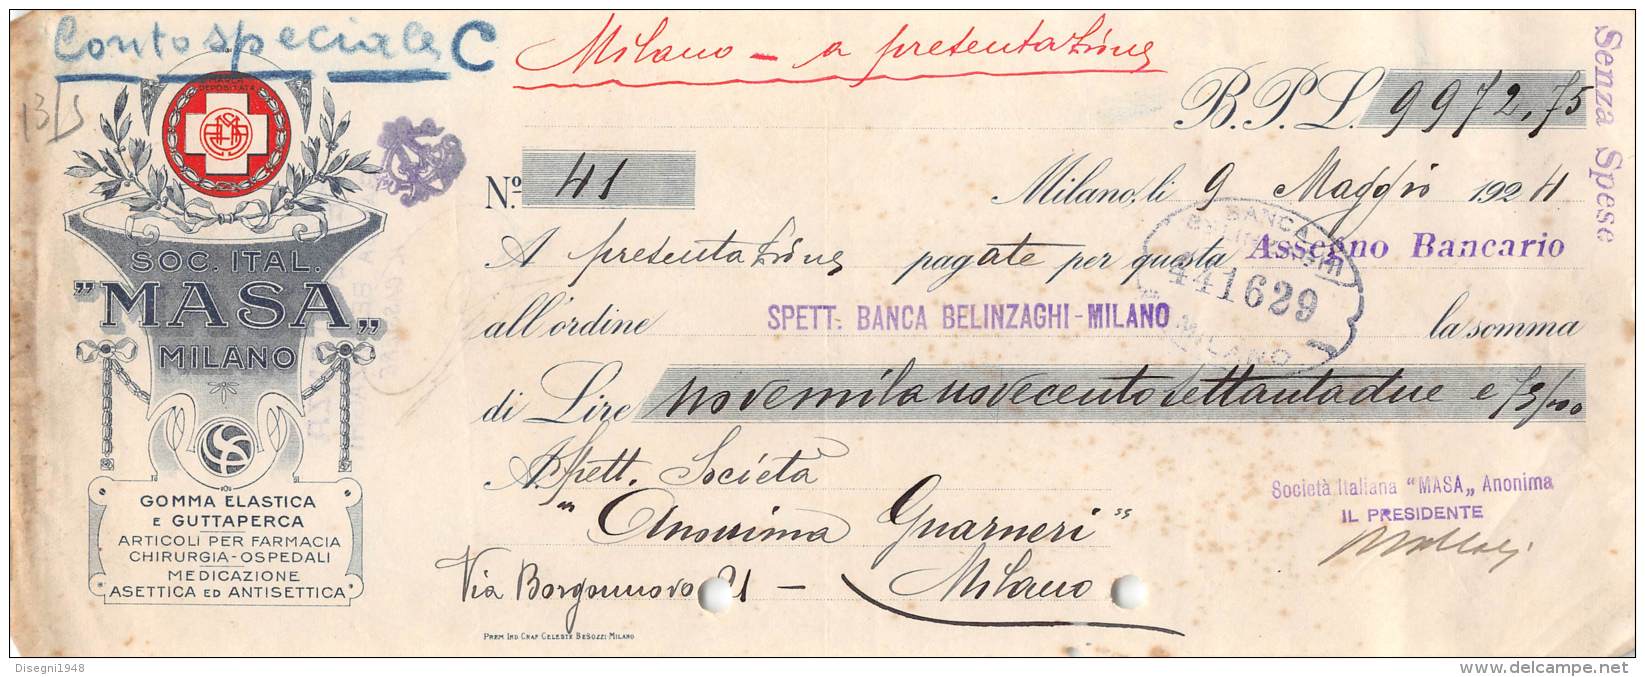 06250  "SOCIETA' ITALIANA MASA - MILANO - ASSEGNO BANCARIO - 1924" ORIGINALE - Cheques & Traveler's Cheques